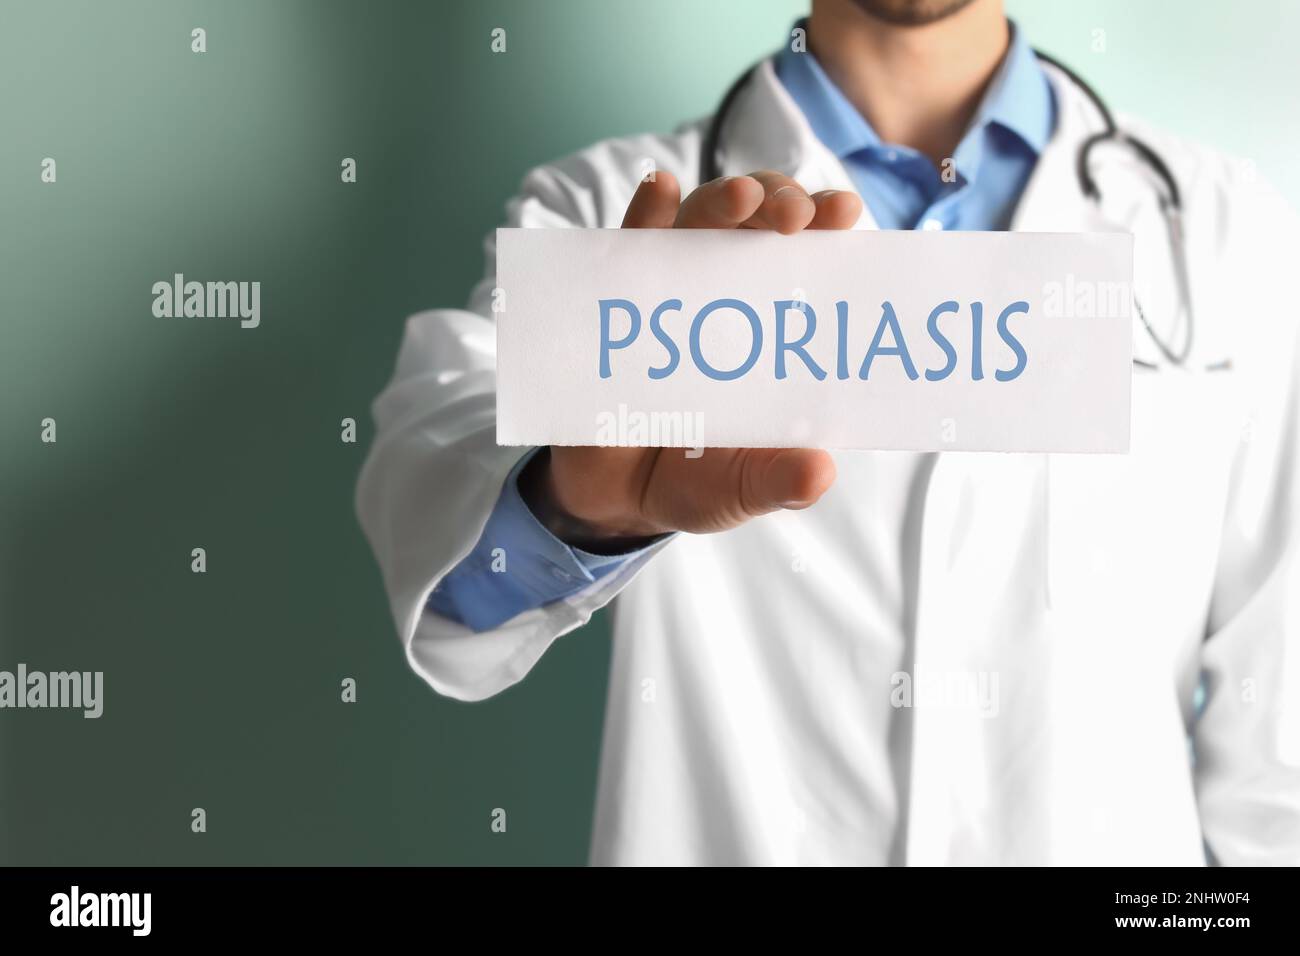 Arzt hält Schild mit Wort PSORIASIS auf farbigem Hintergrund, Nahaufnahme Stockfoto